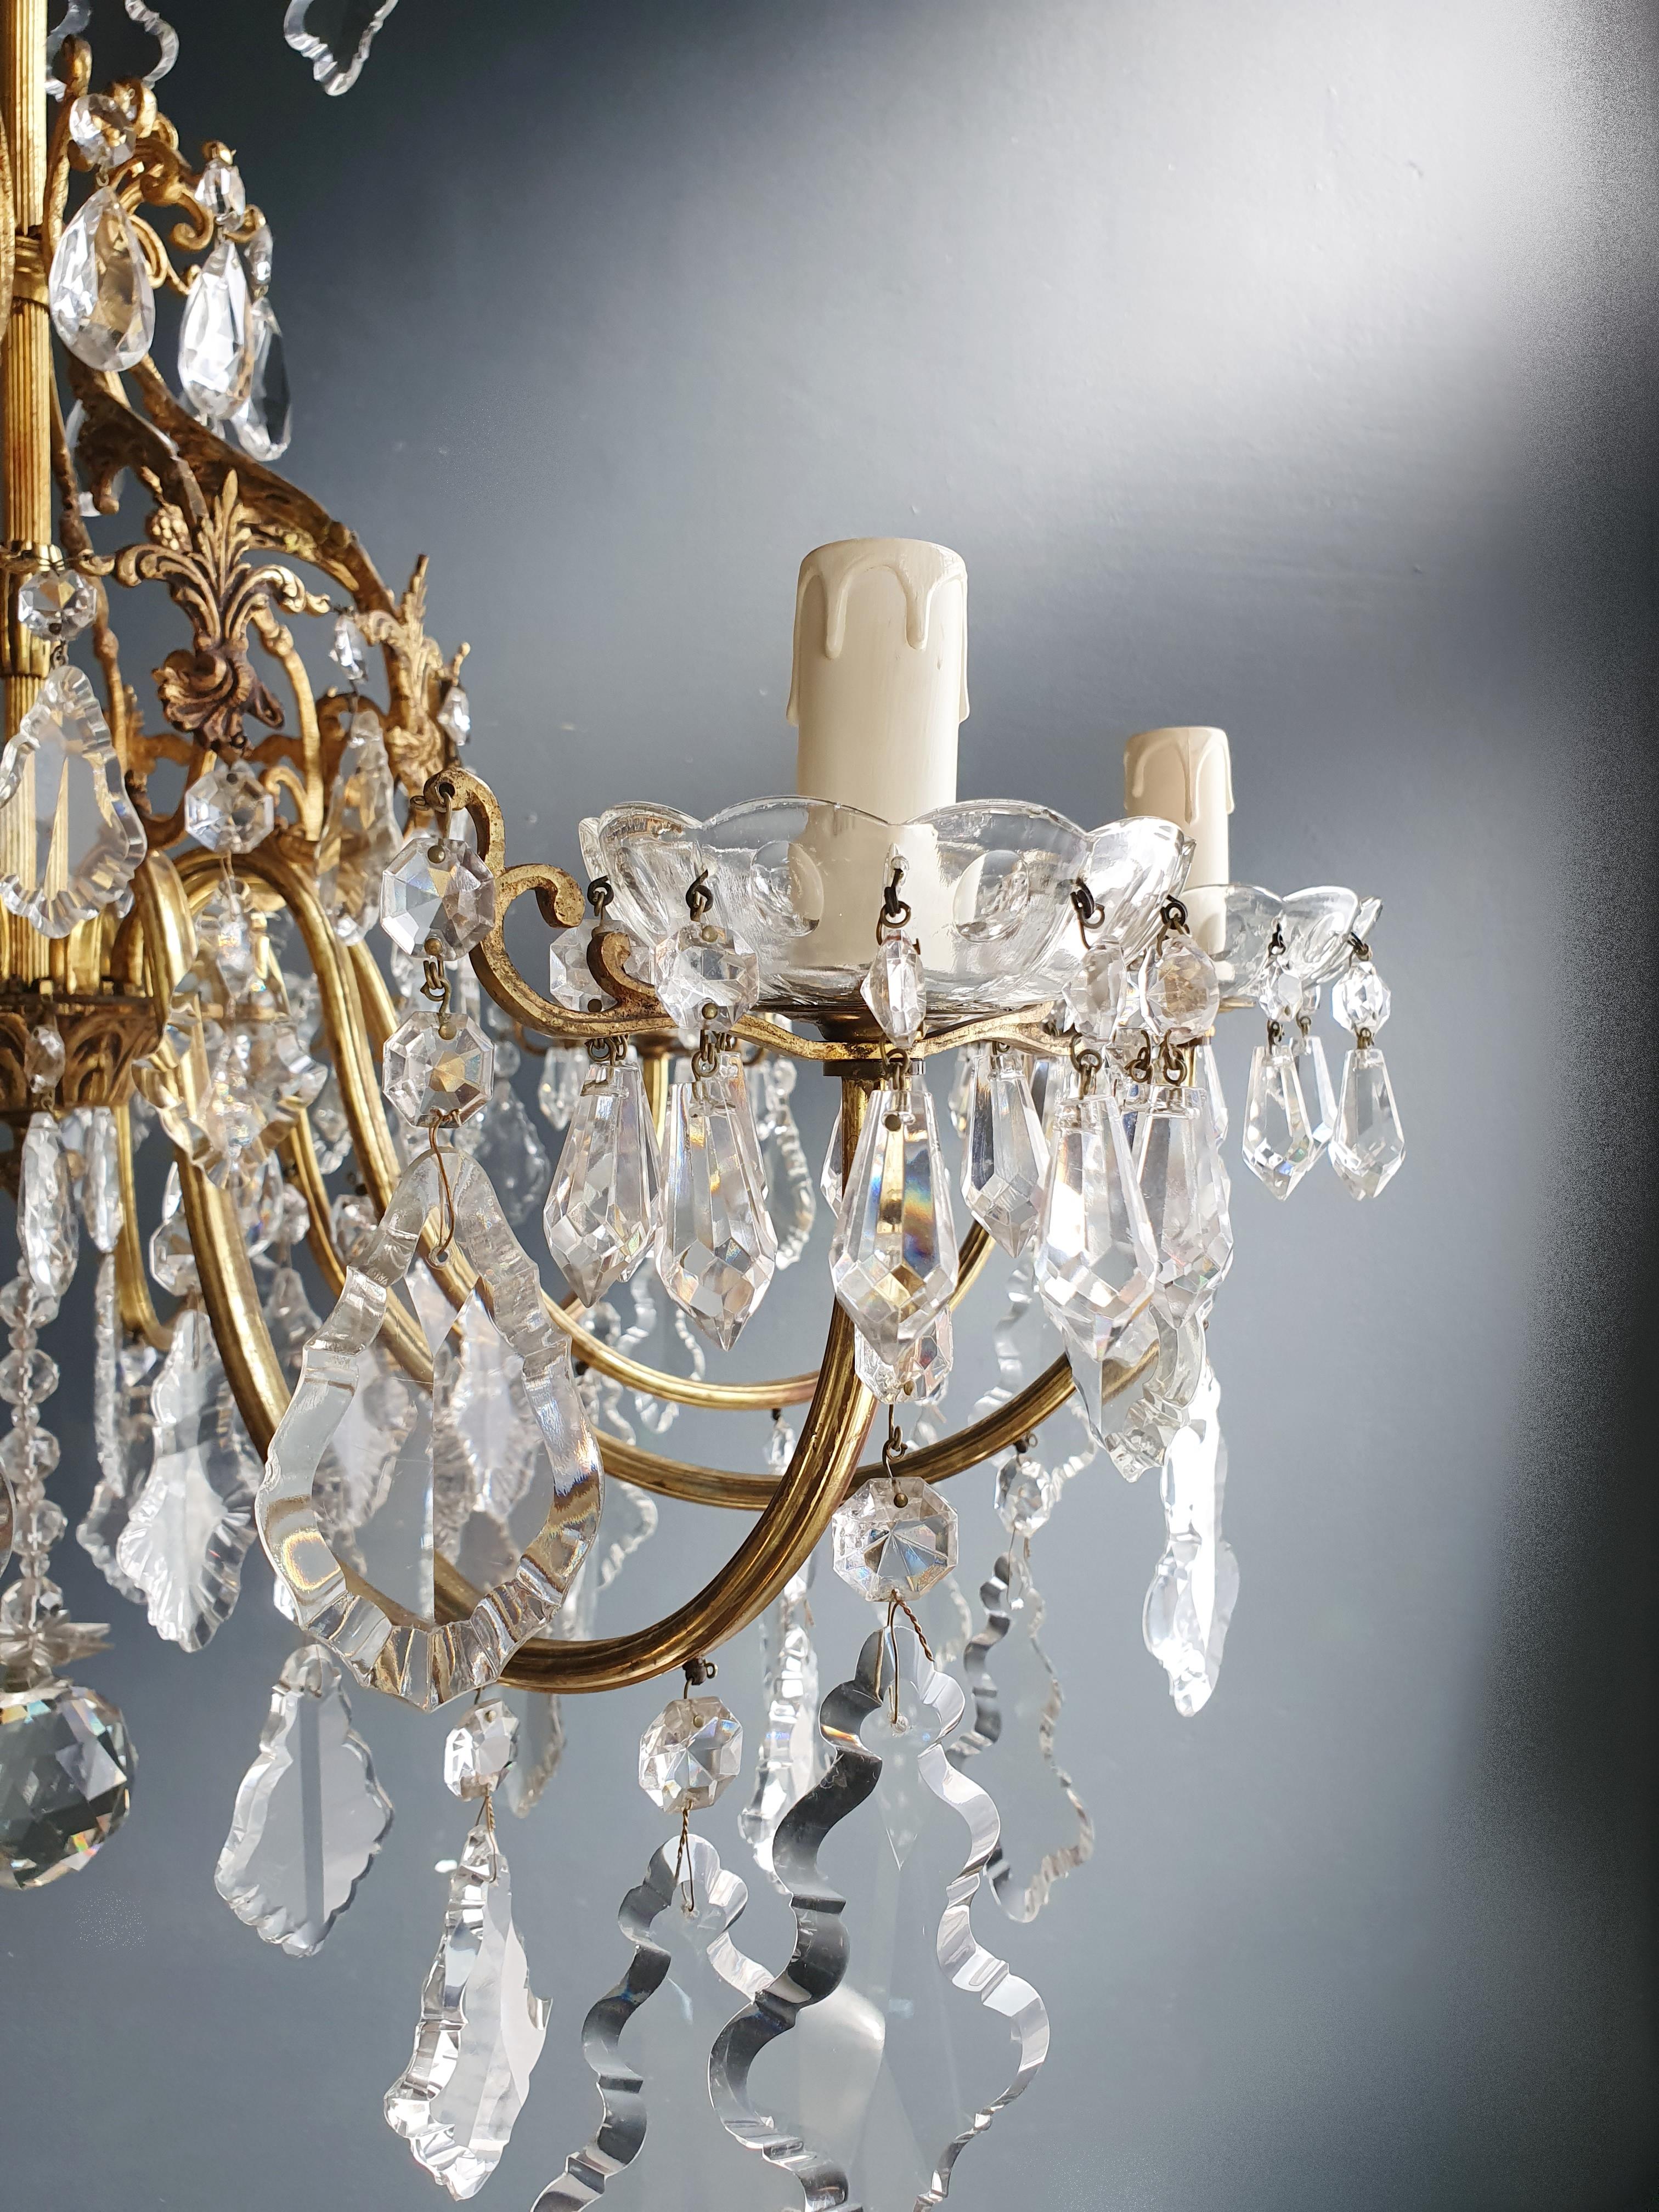 Mid-20th Century Brass Crystal Chandelier Antique Ceiling Lamp Lustre Art Nouveau Lamp